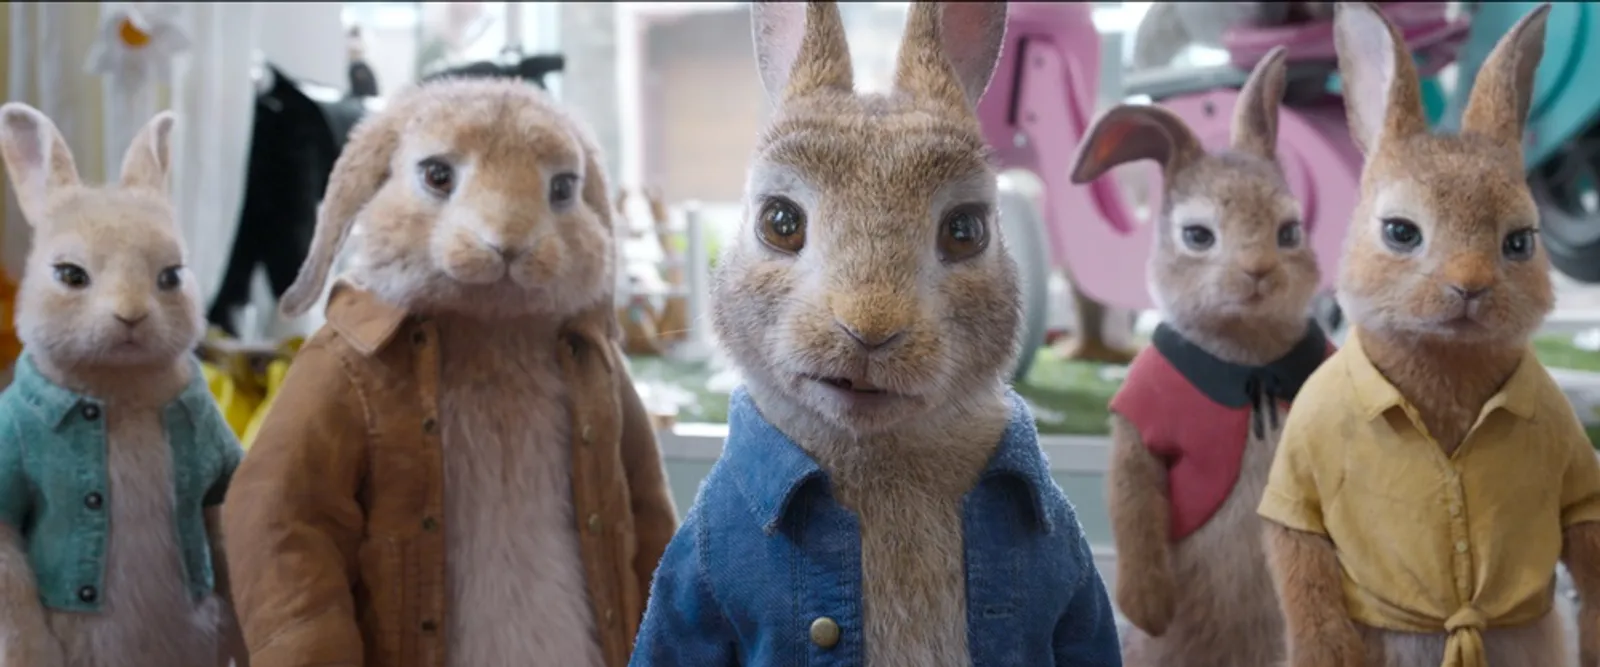 5 Fakta ini Bikin Kamu Penasaran dengan Film 'Peter Rabbit 2'